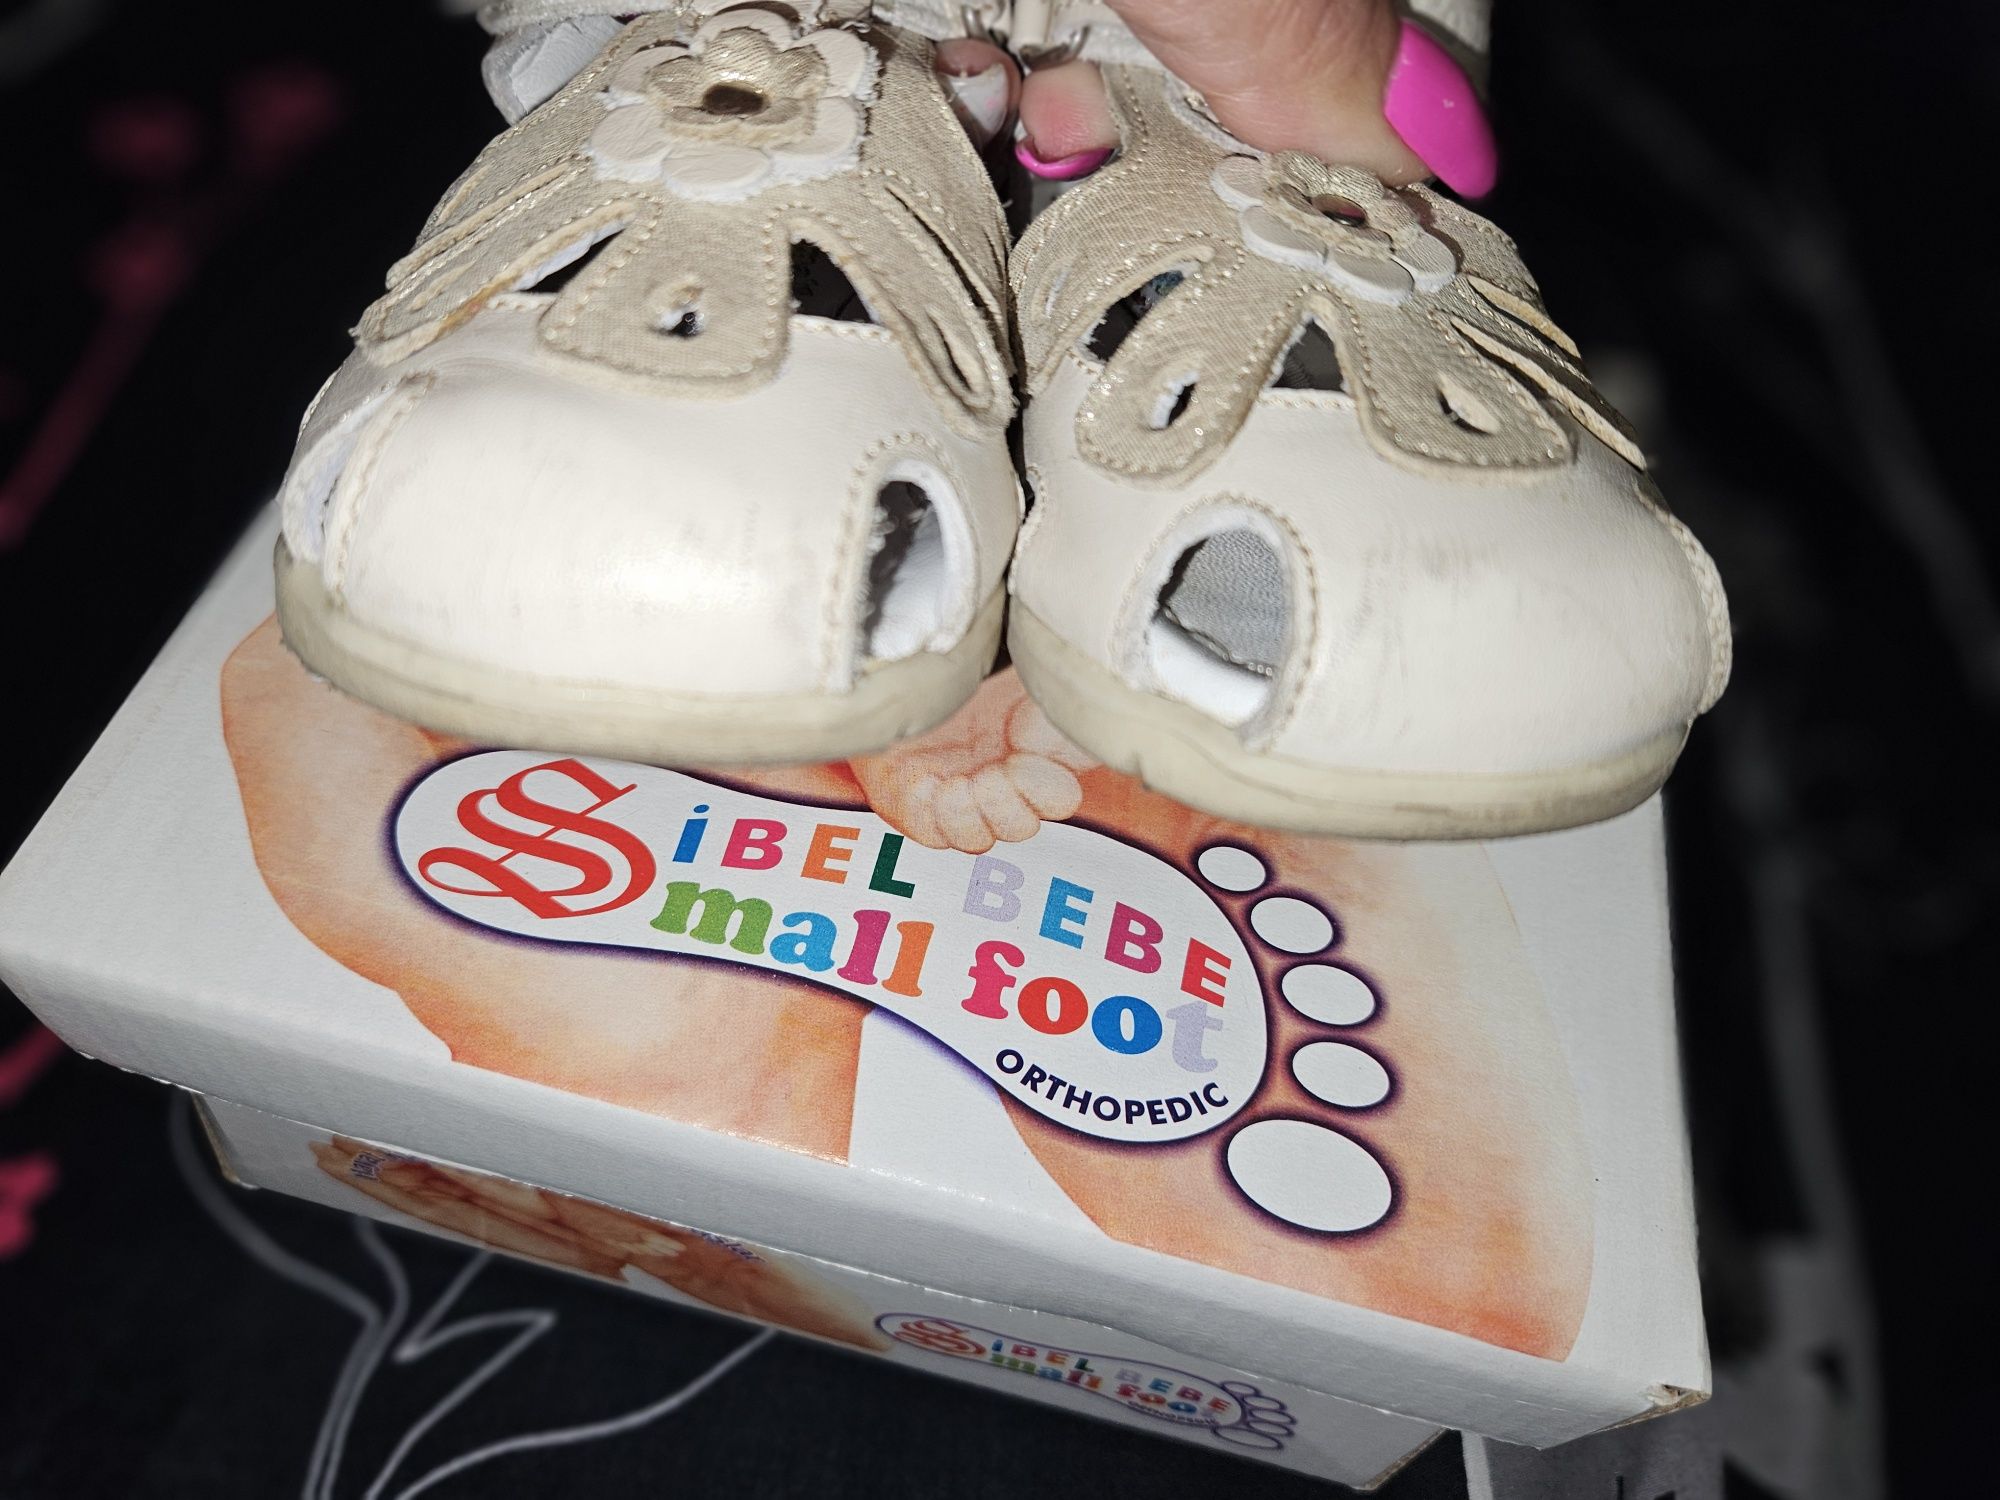 Бебешки сандалки